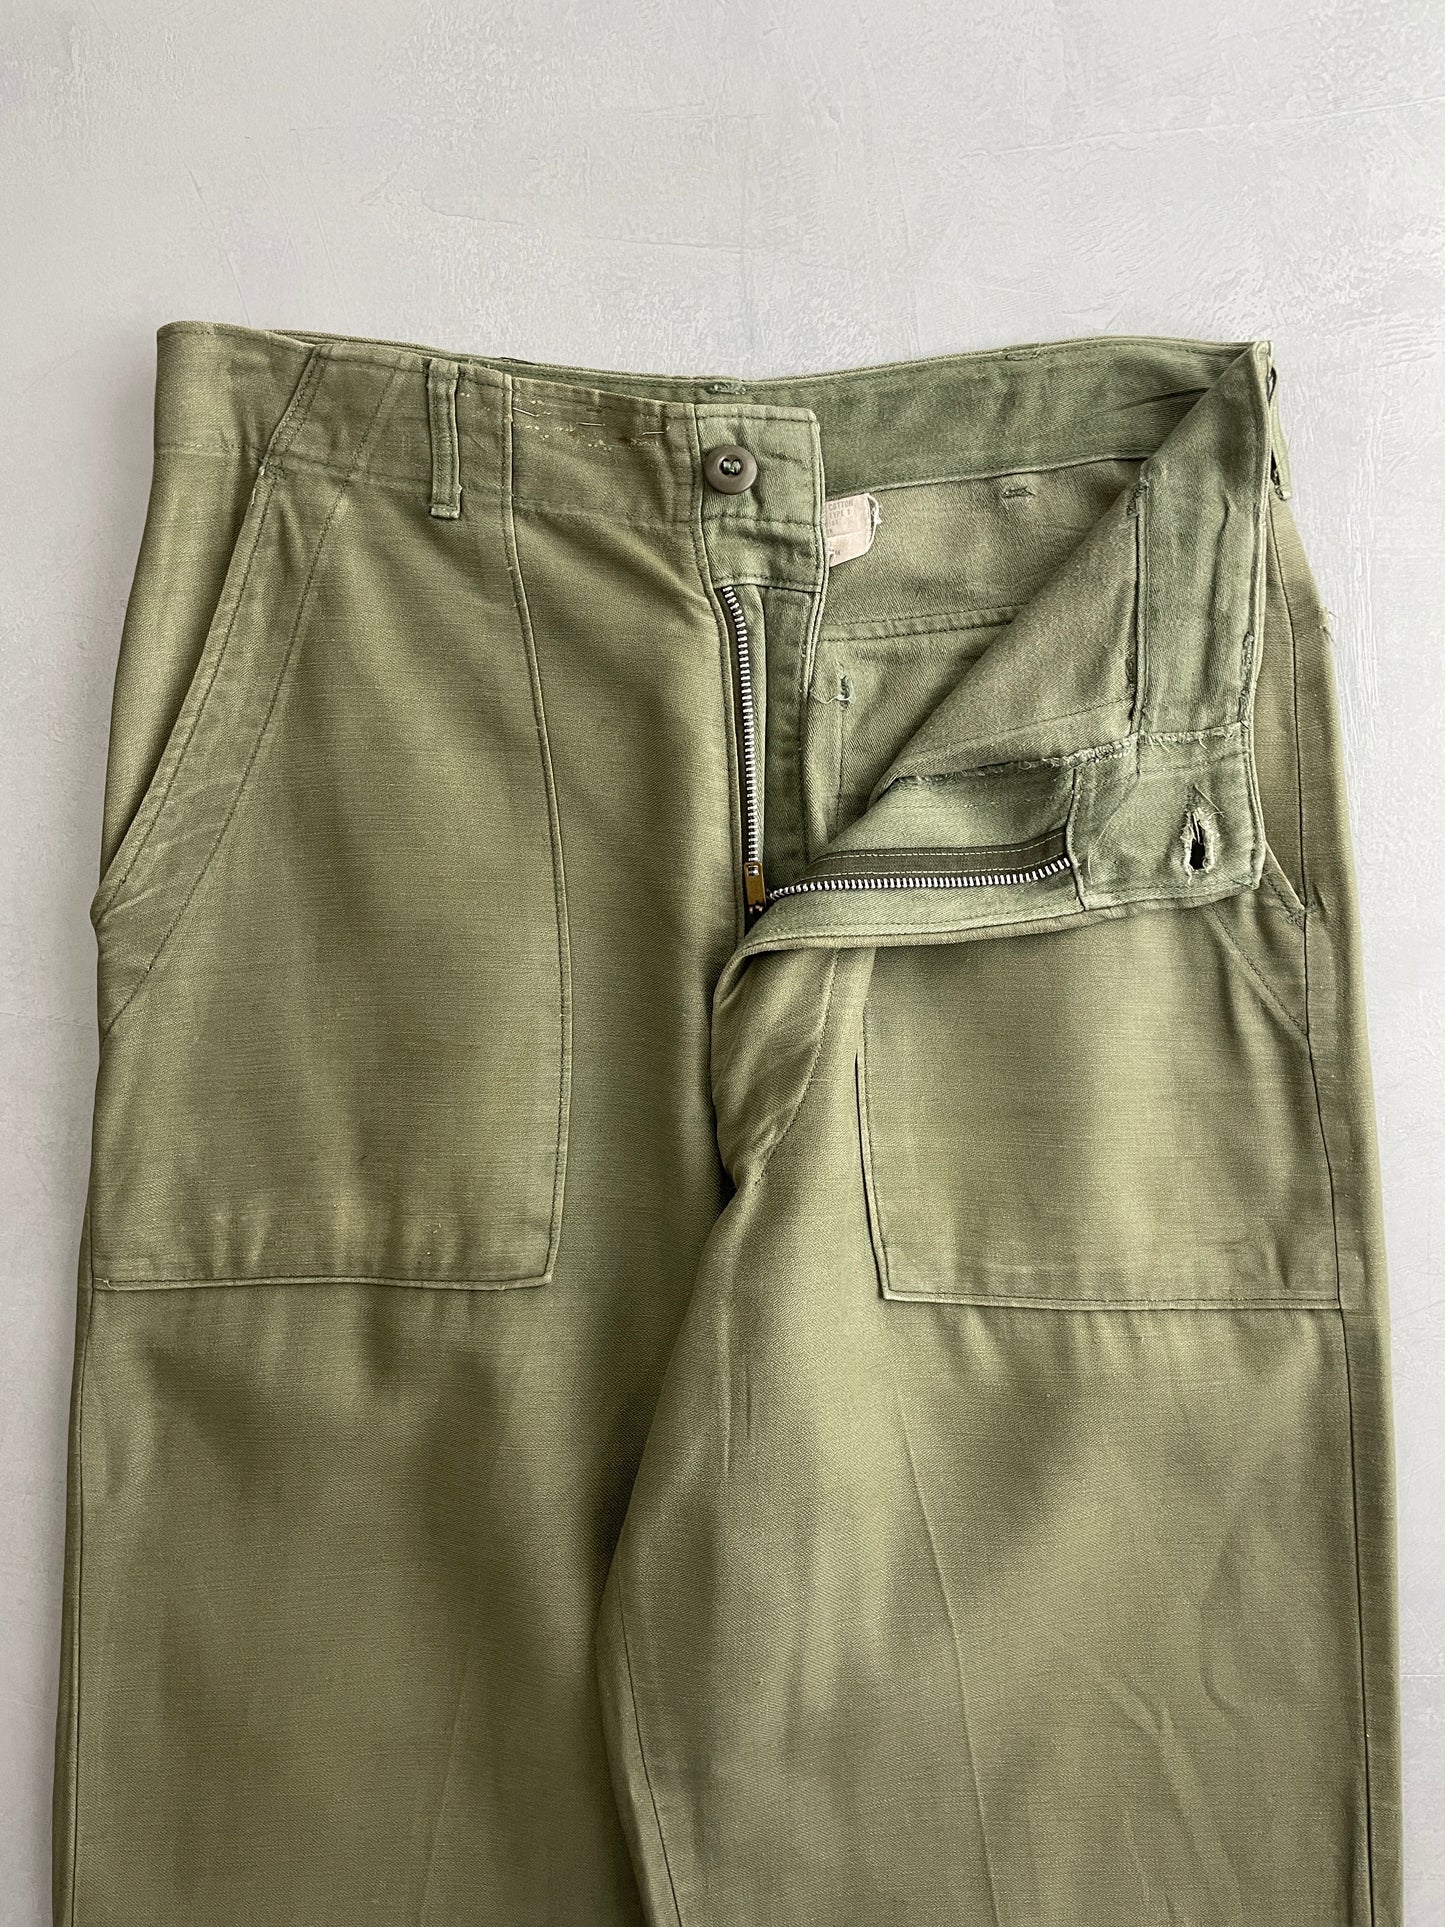 OG-107 US Army Pants [32"]